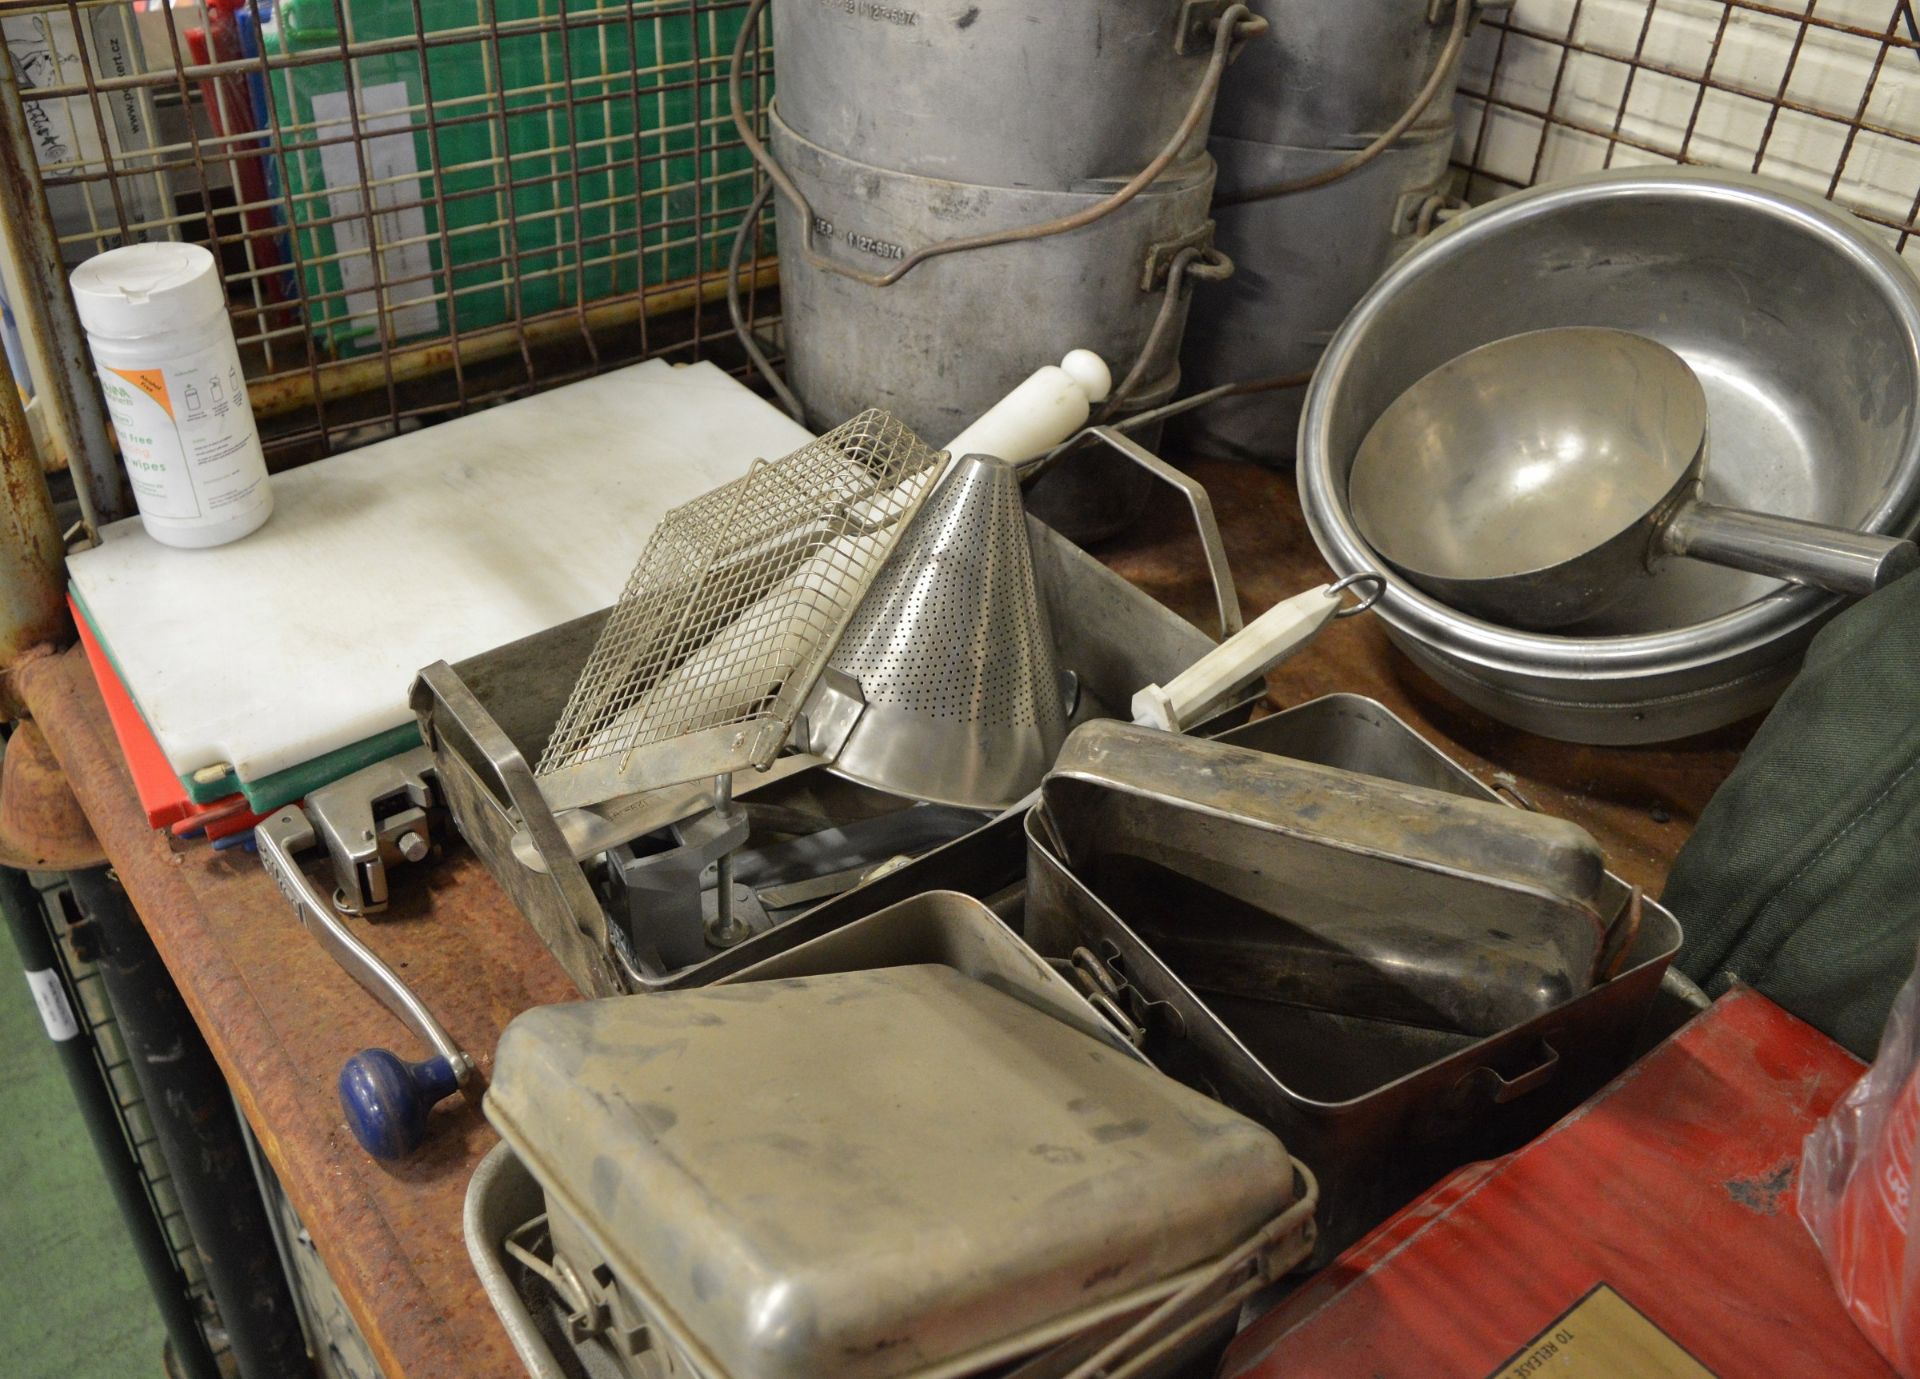 Field catering kit - Cooker, Oven, Utensil kit, pots, pans - Image 4 of 8